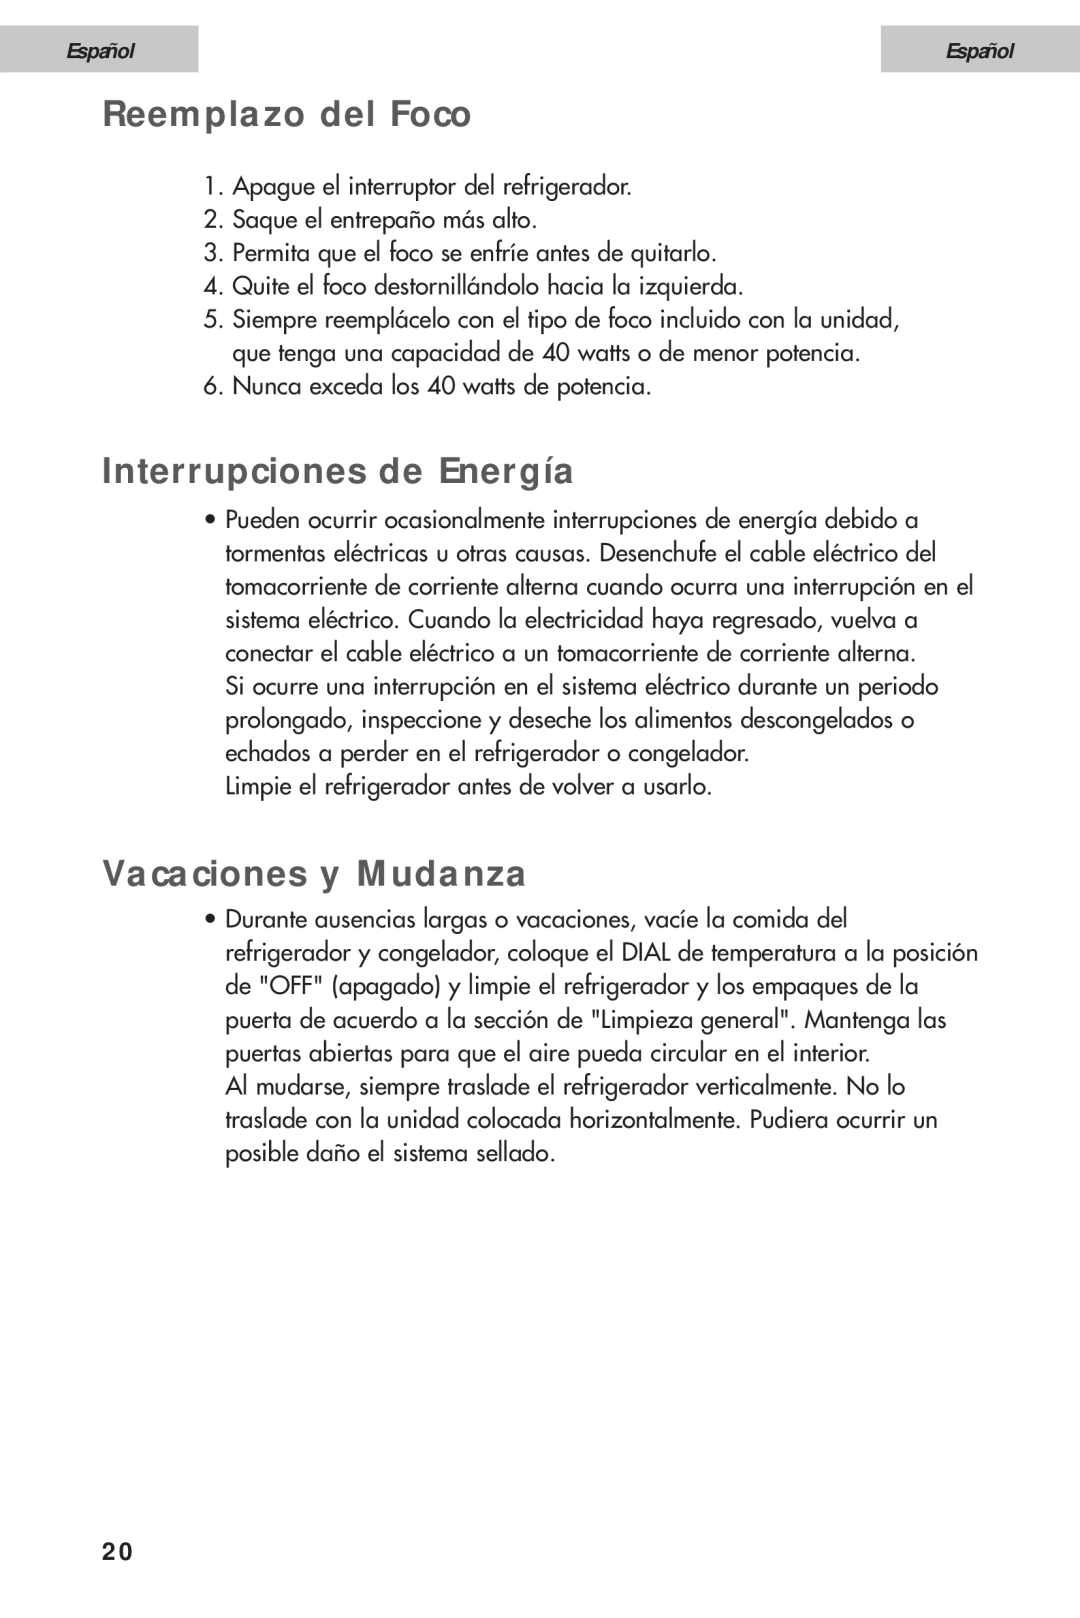 Haier HDE10WNA, HDE11WNA user manual Reemplazo del Foco, Interrupciones de Energía, Vacaciones y Mudanza, Español 